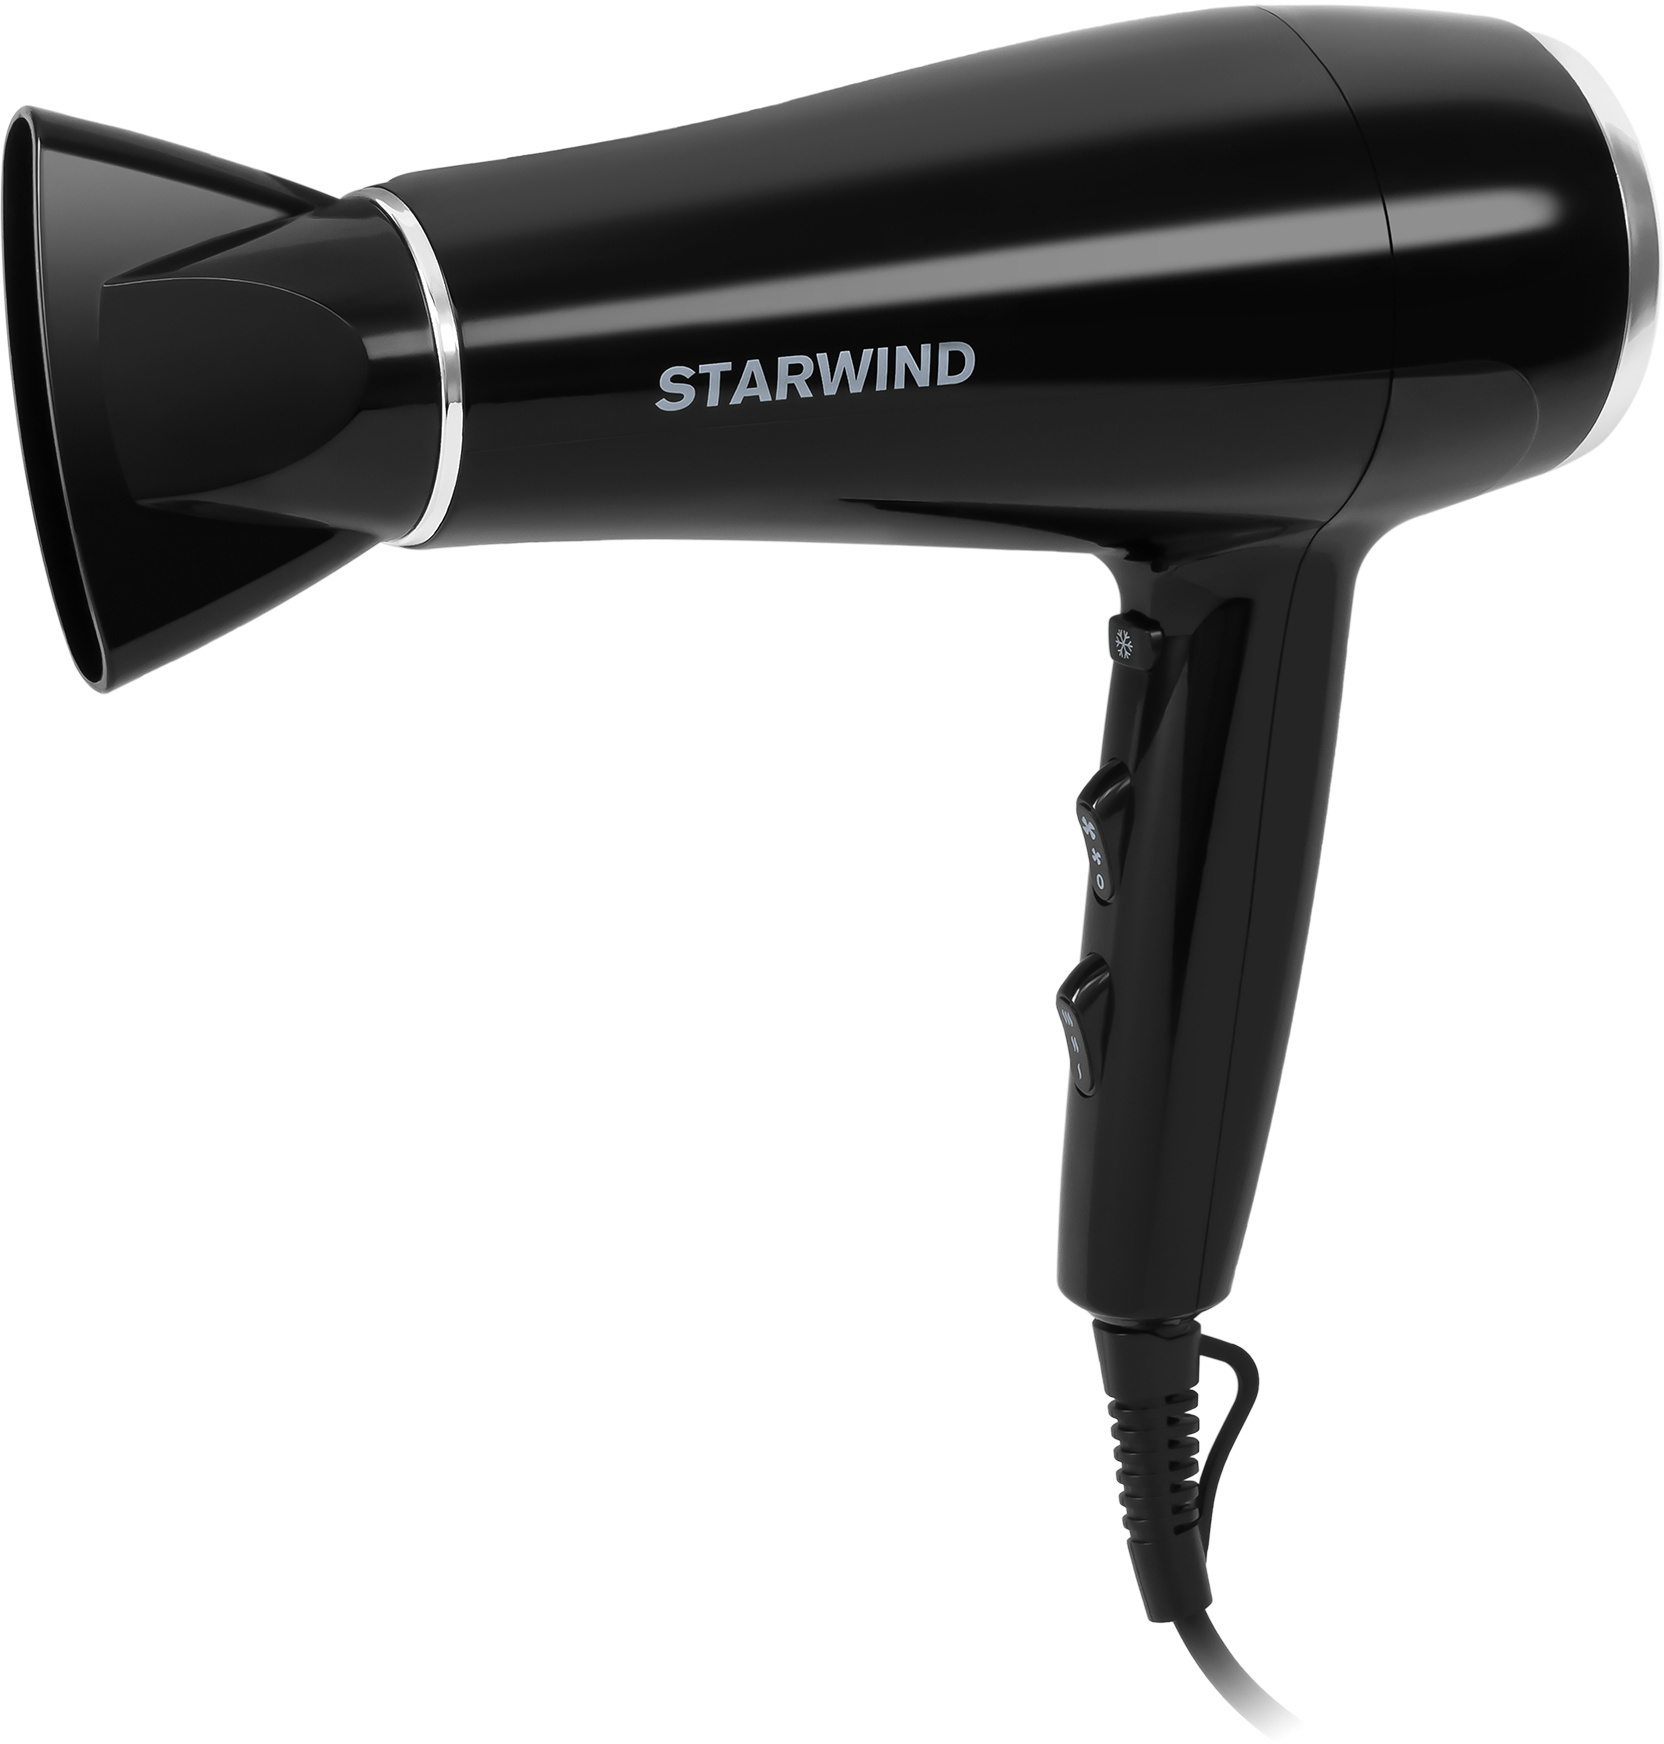 Фен Starwind SHD 7080 черный/хром от магазина Старвинд